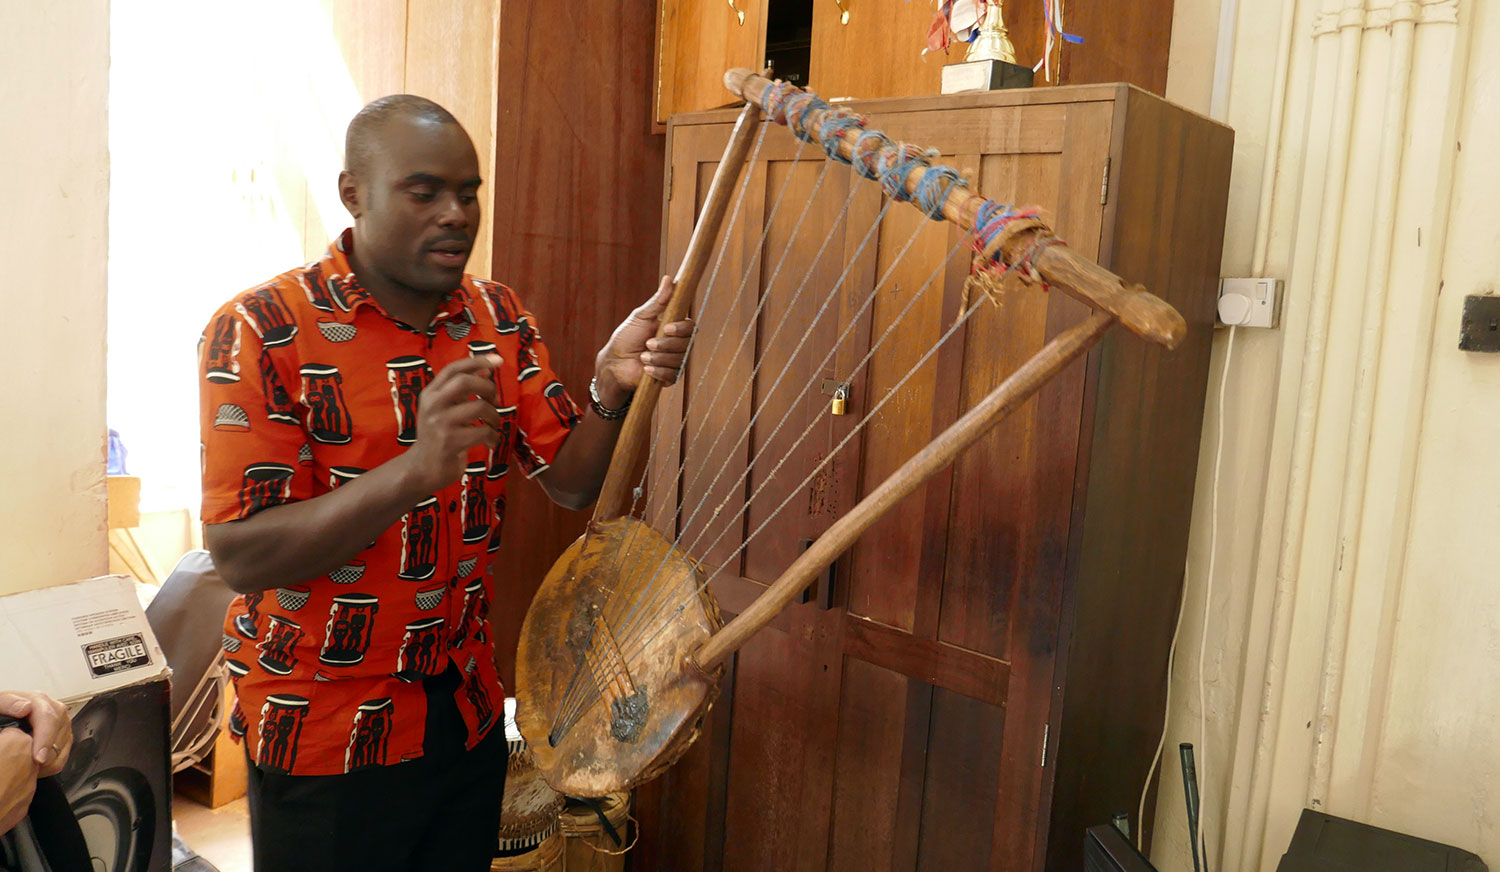 Leonard Wekesa, a choral conductor from Nairobi, Kenya, demonstrating a native Kenyan instrument.